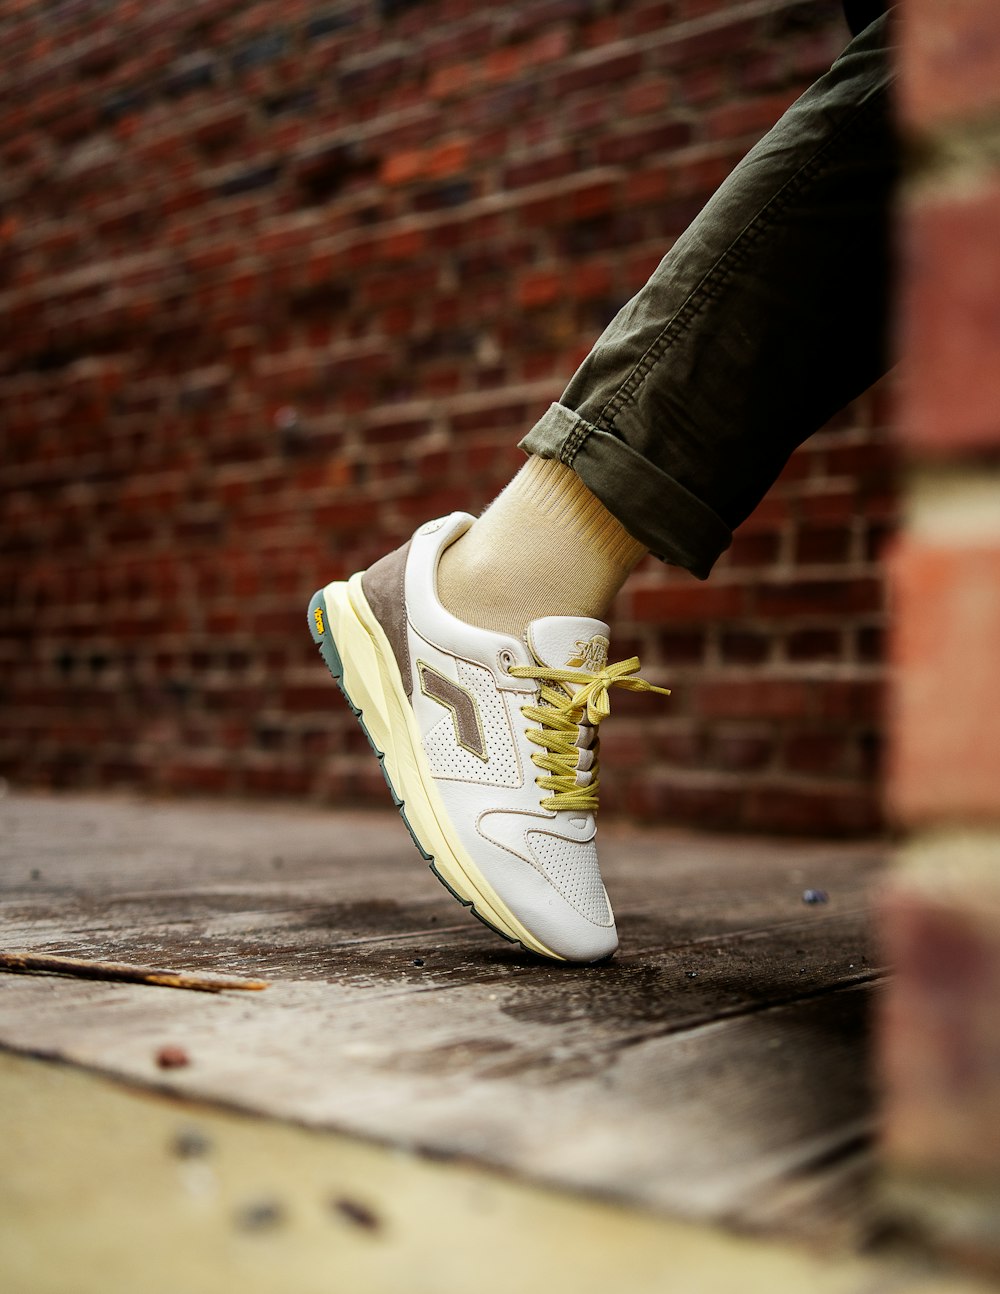 persona che indossa scarpe da ginnastica Nike bianche e gialle foto –  Scarpa da ginnastica Immagine gratuita su Unsplash